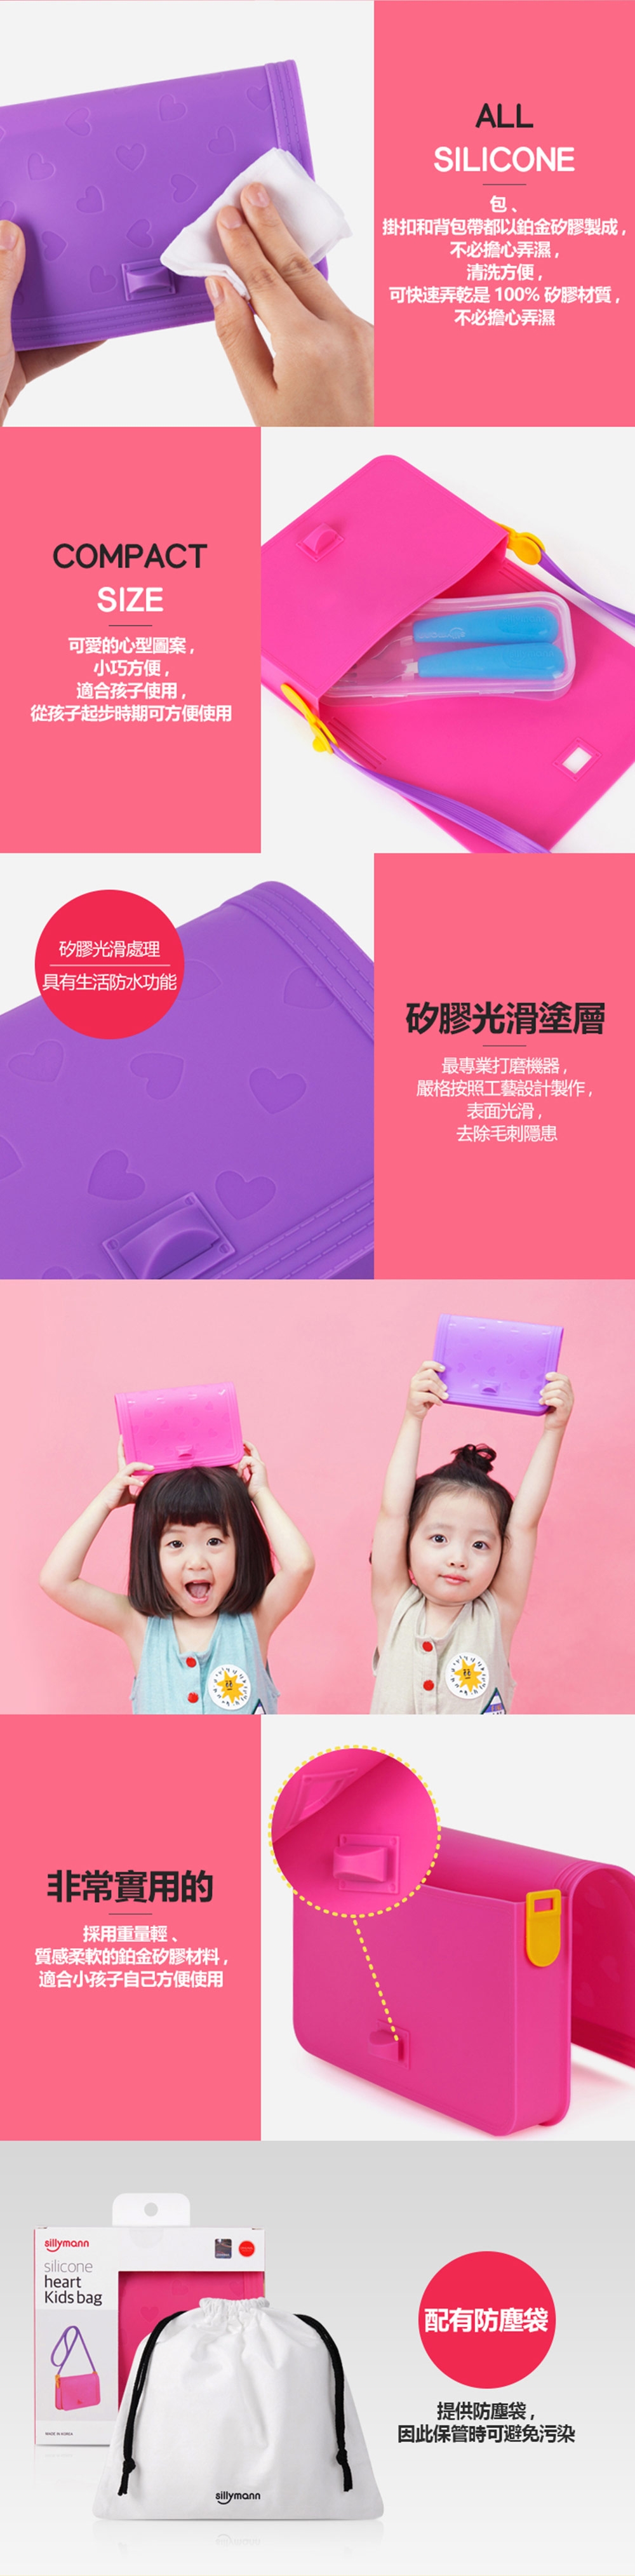 韓國sillymann 100%鉑金矽膠可愛心型兒童包包